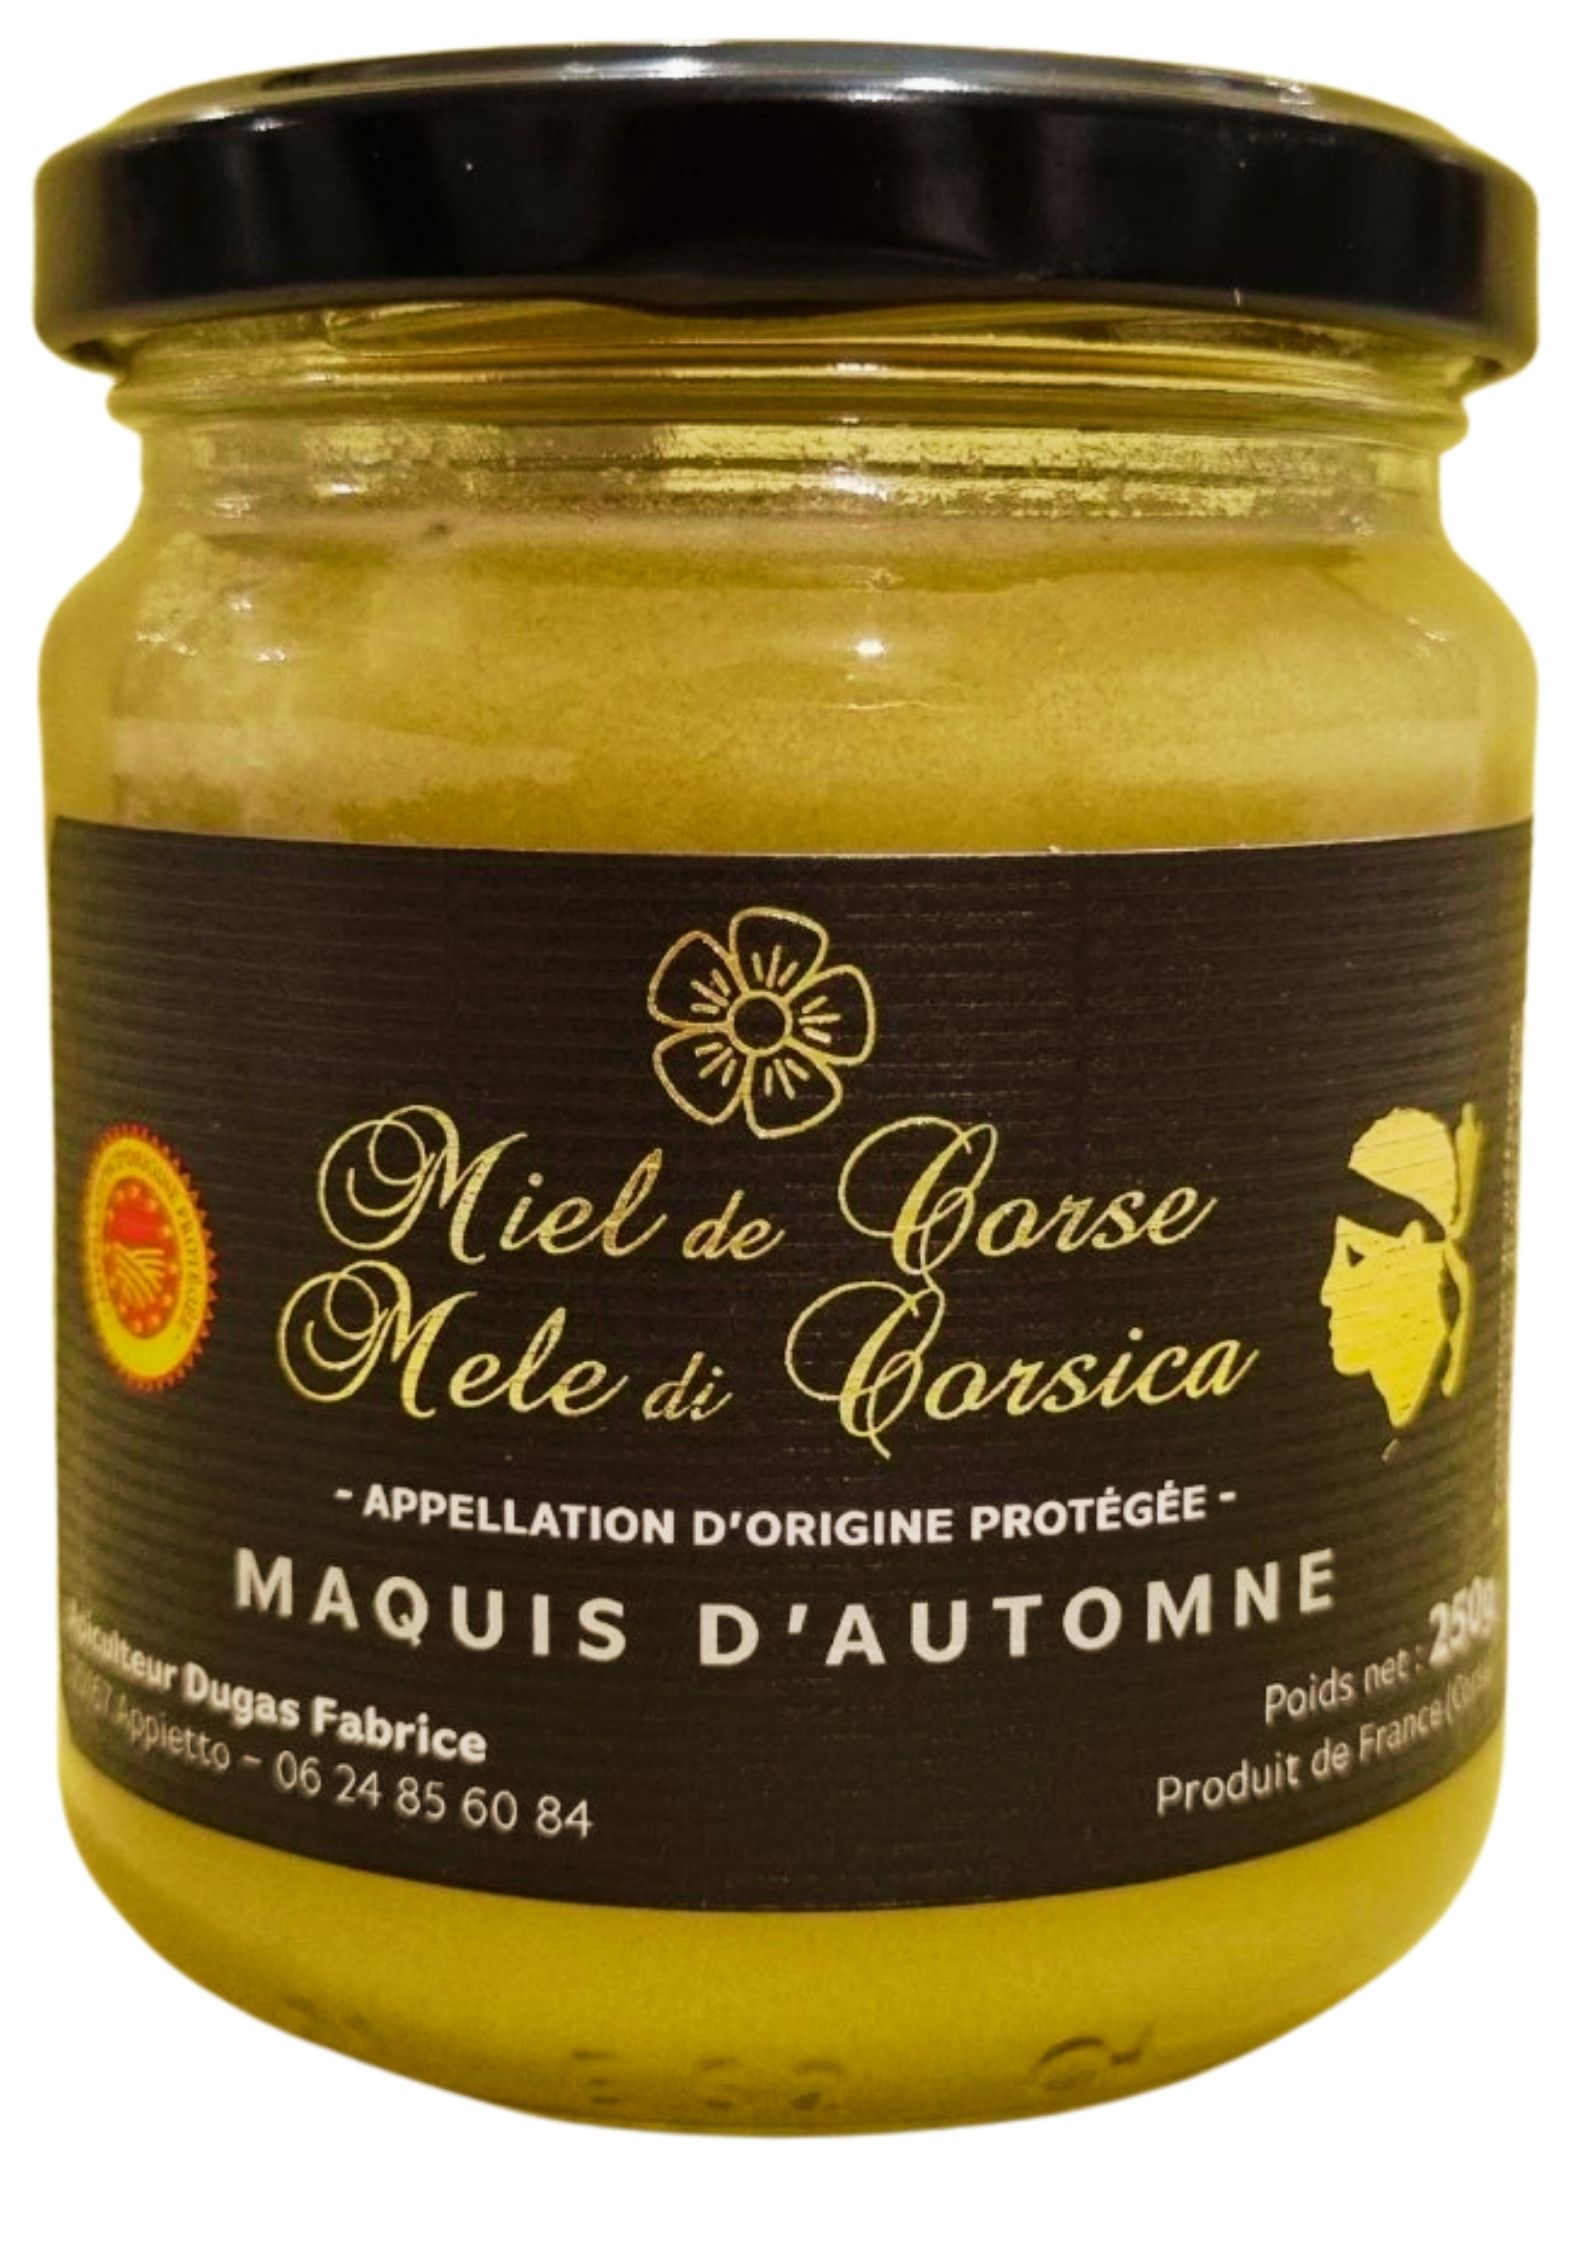 Dugas Fabrice-miel de corse-maquis d' automne-www.luxfood-shop.fr